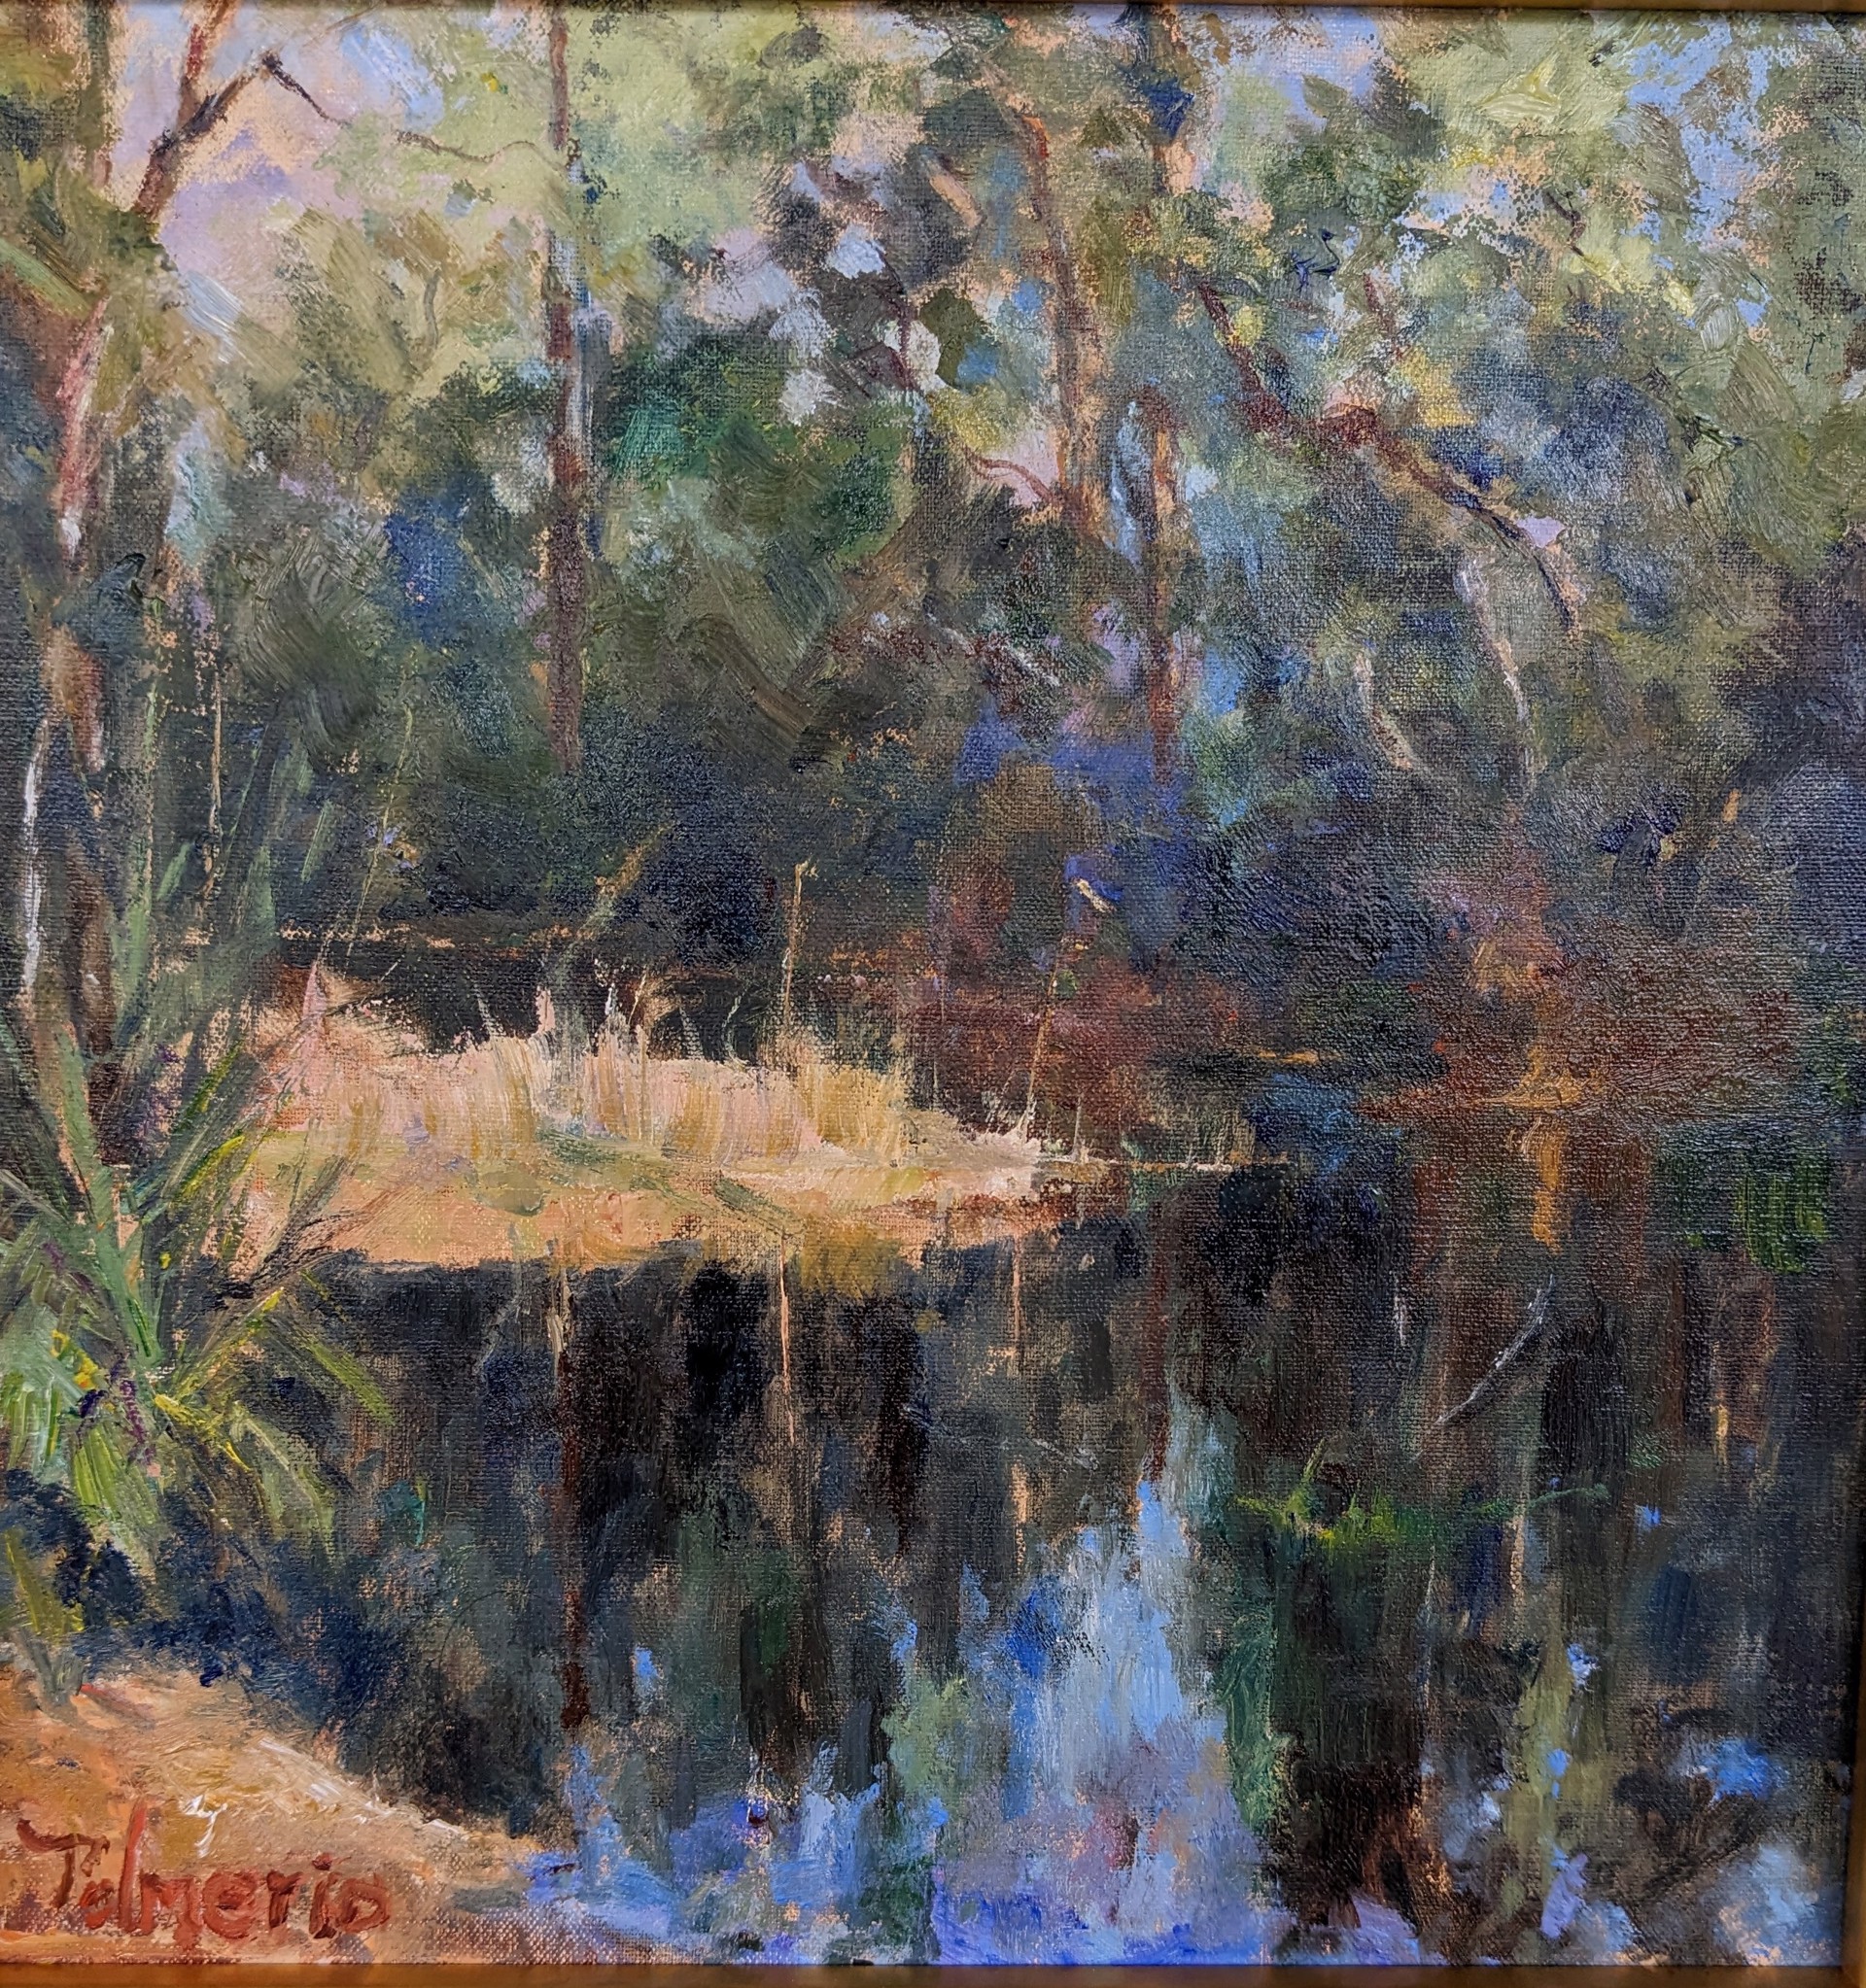 Quiet Reeds Sand Lake by Joe Palmerio